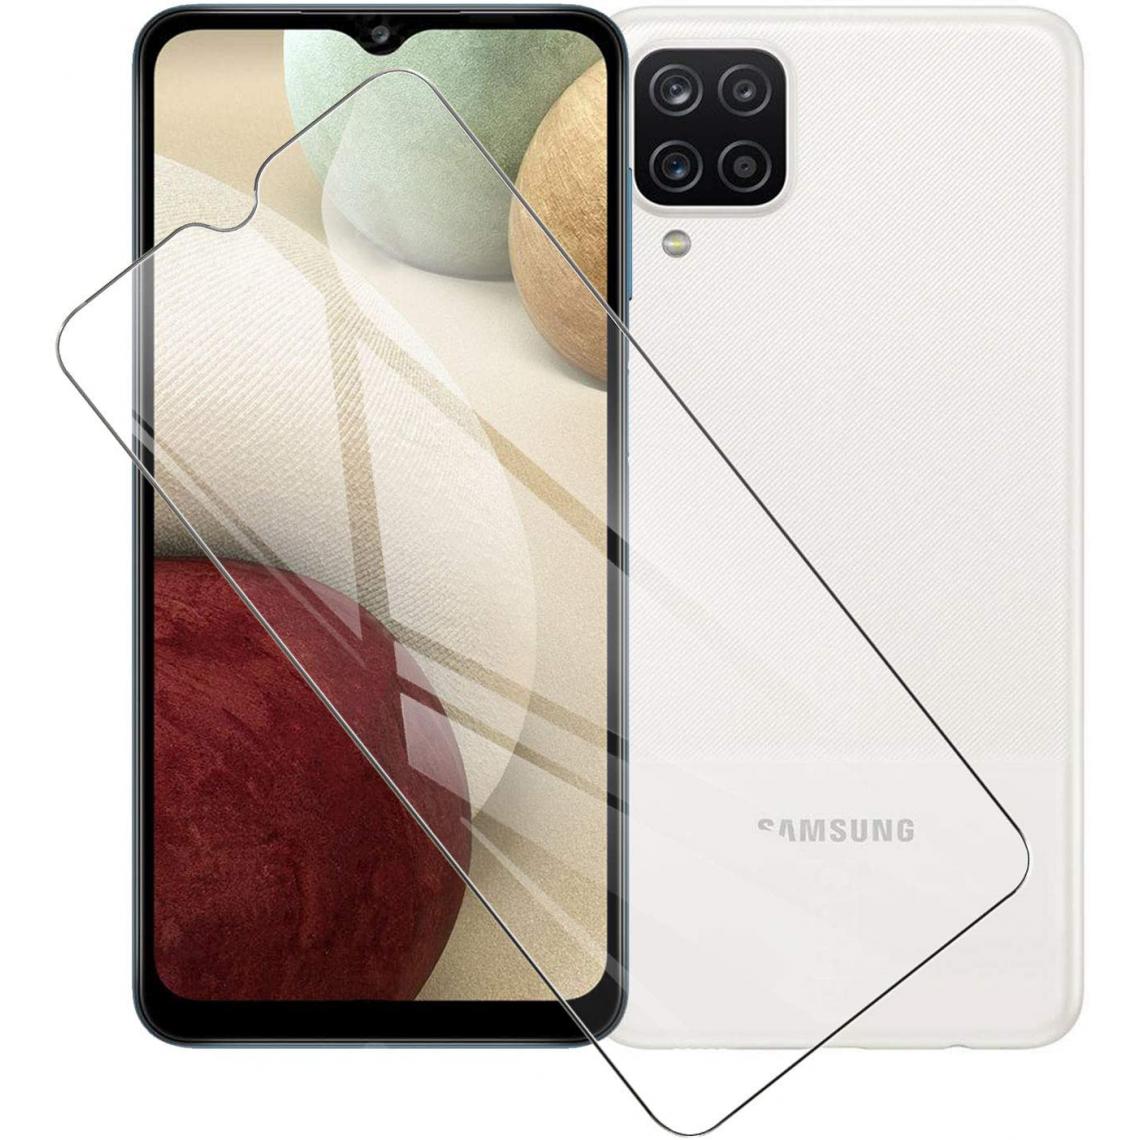 Xeptio - Protection Samsung Galaxy A12 4G : Coque Gel de Protection en TPU Invisible arrière Transparente ET Protection écran classique - Coque, étui smartphone